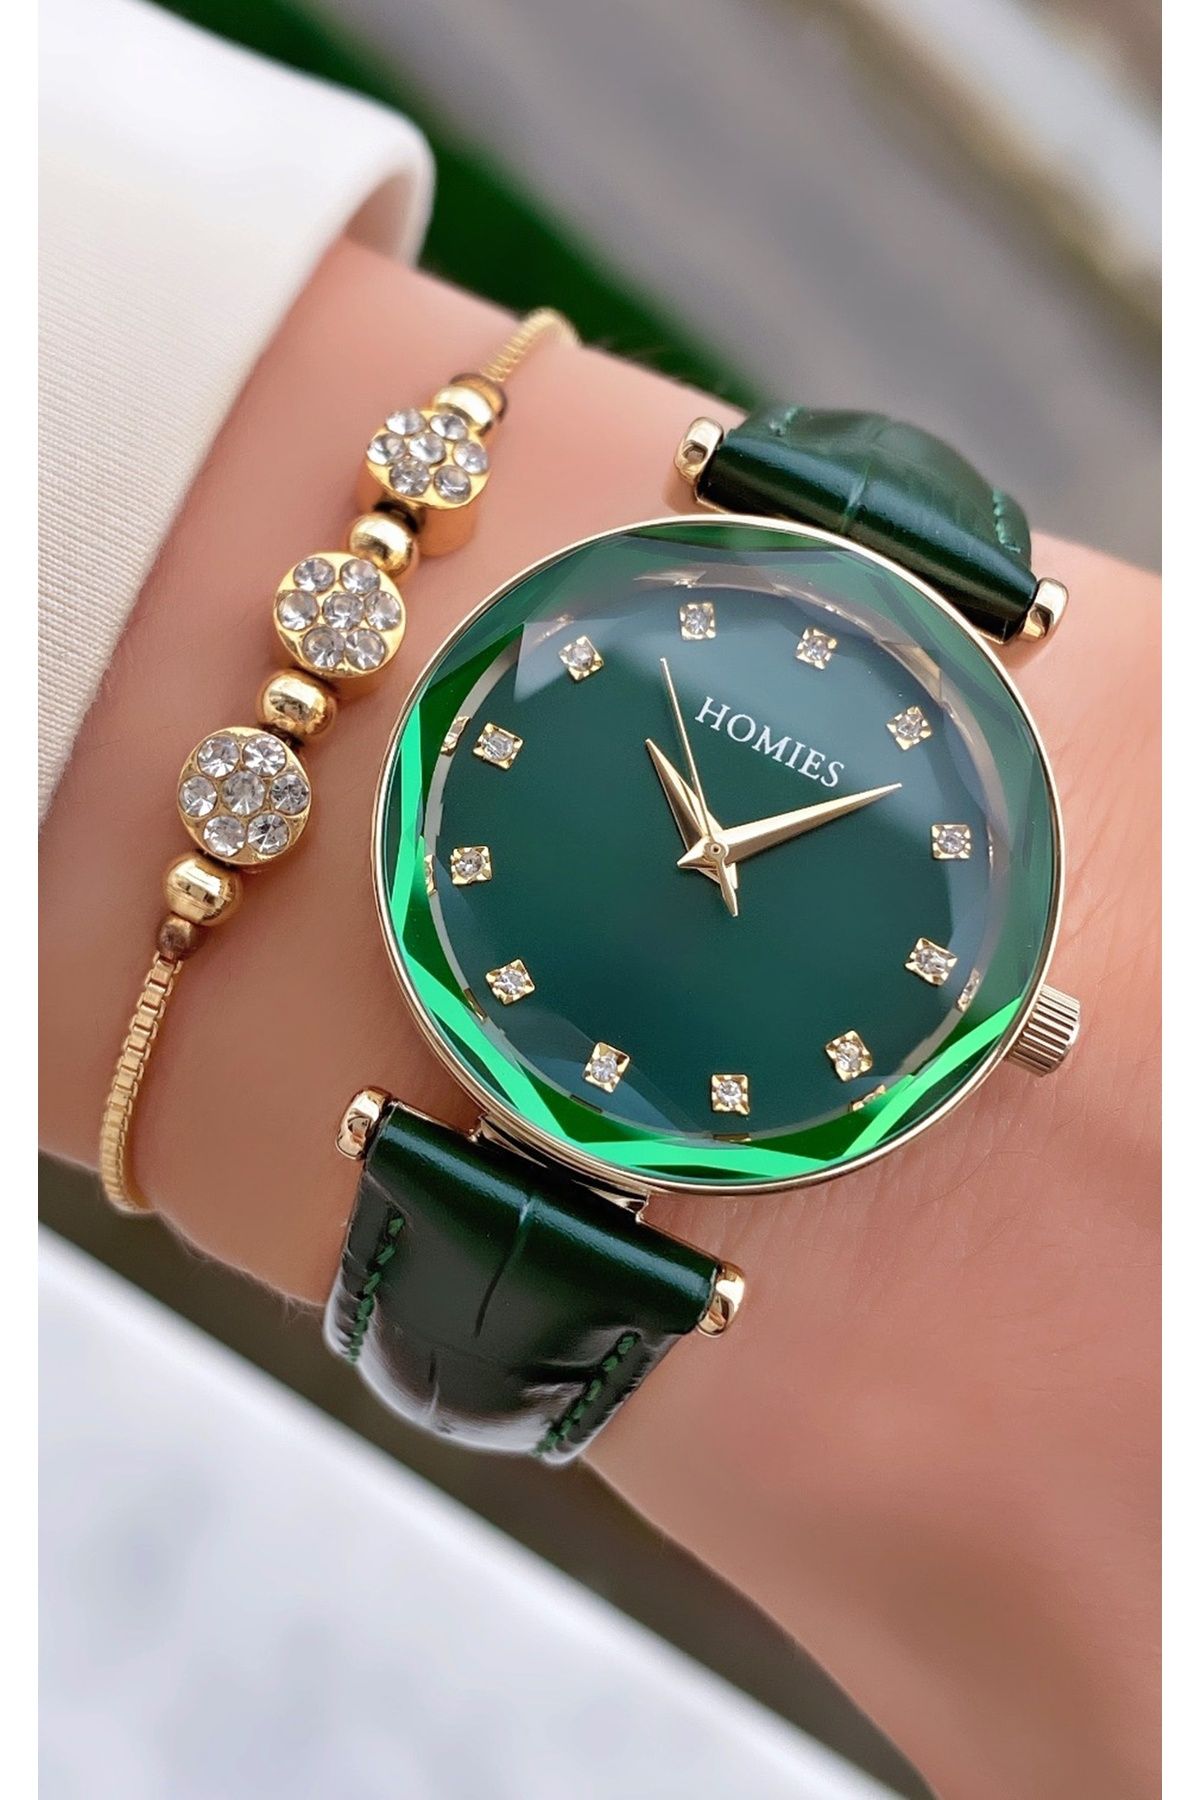 Homies Marka Yeşil Renk Yeni Sezon Deri Kordon Su Geçirmez Kadın Kol Saati - Bileklik